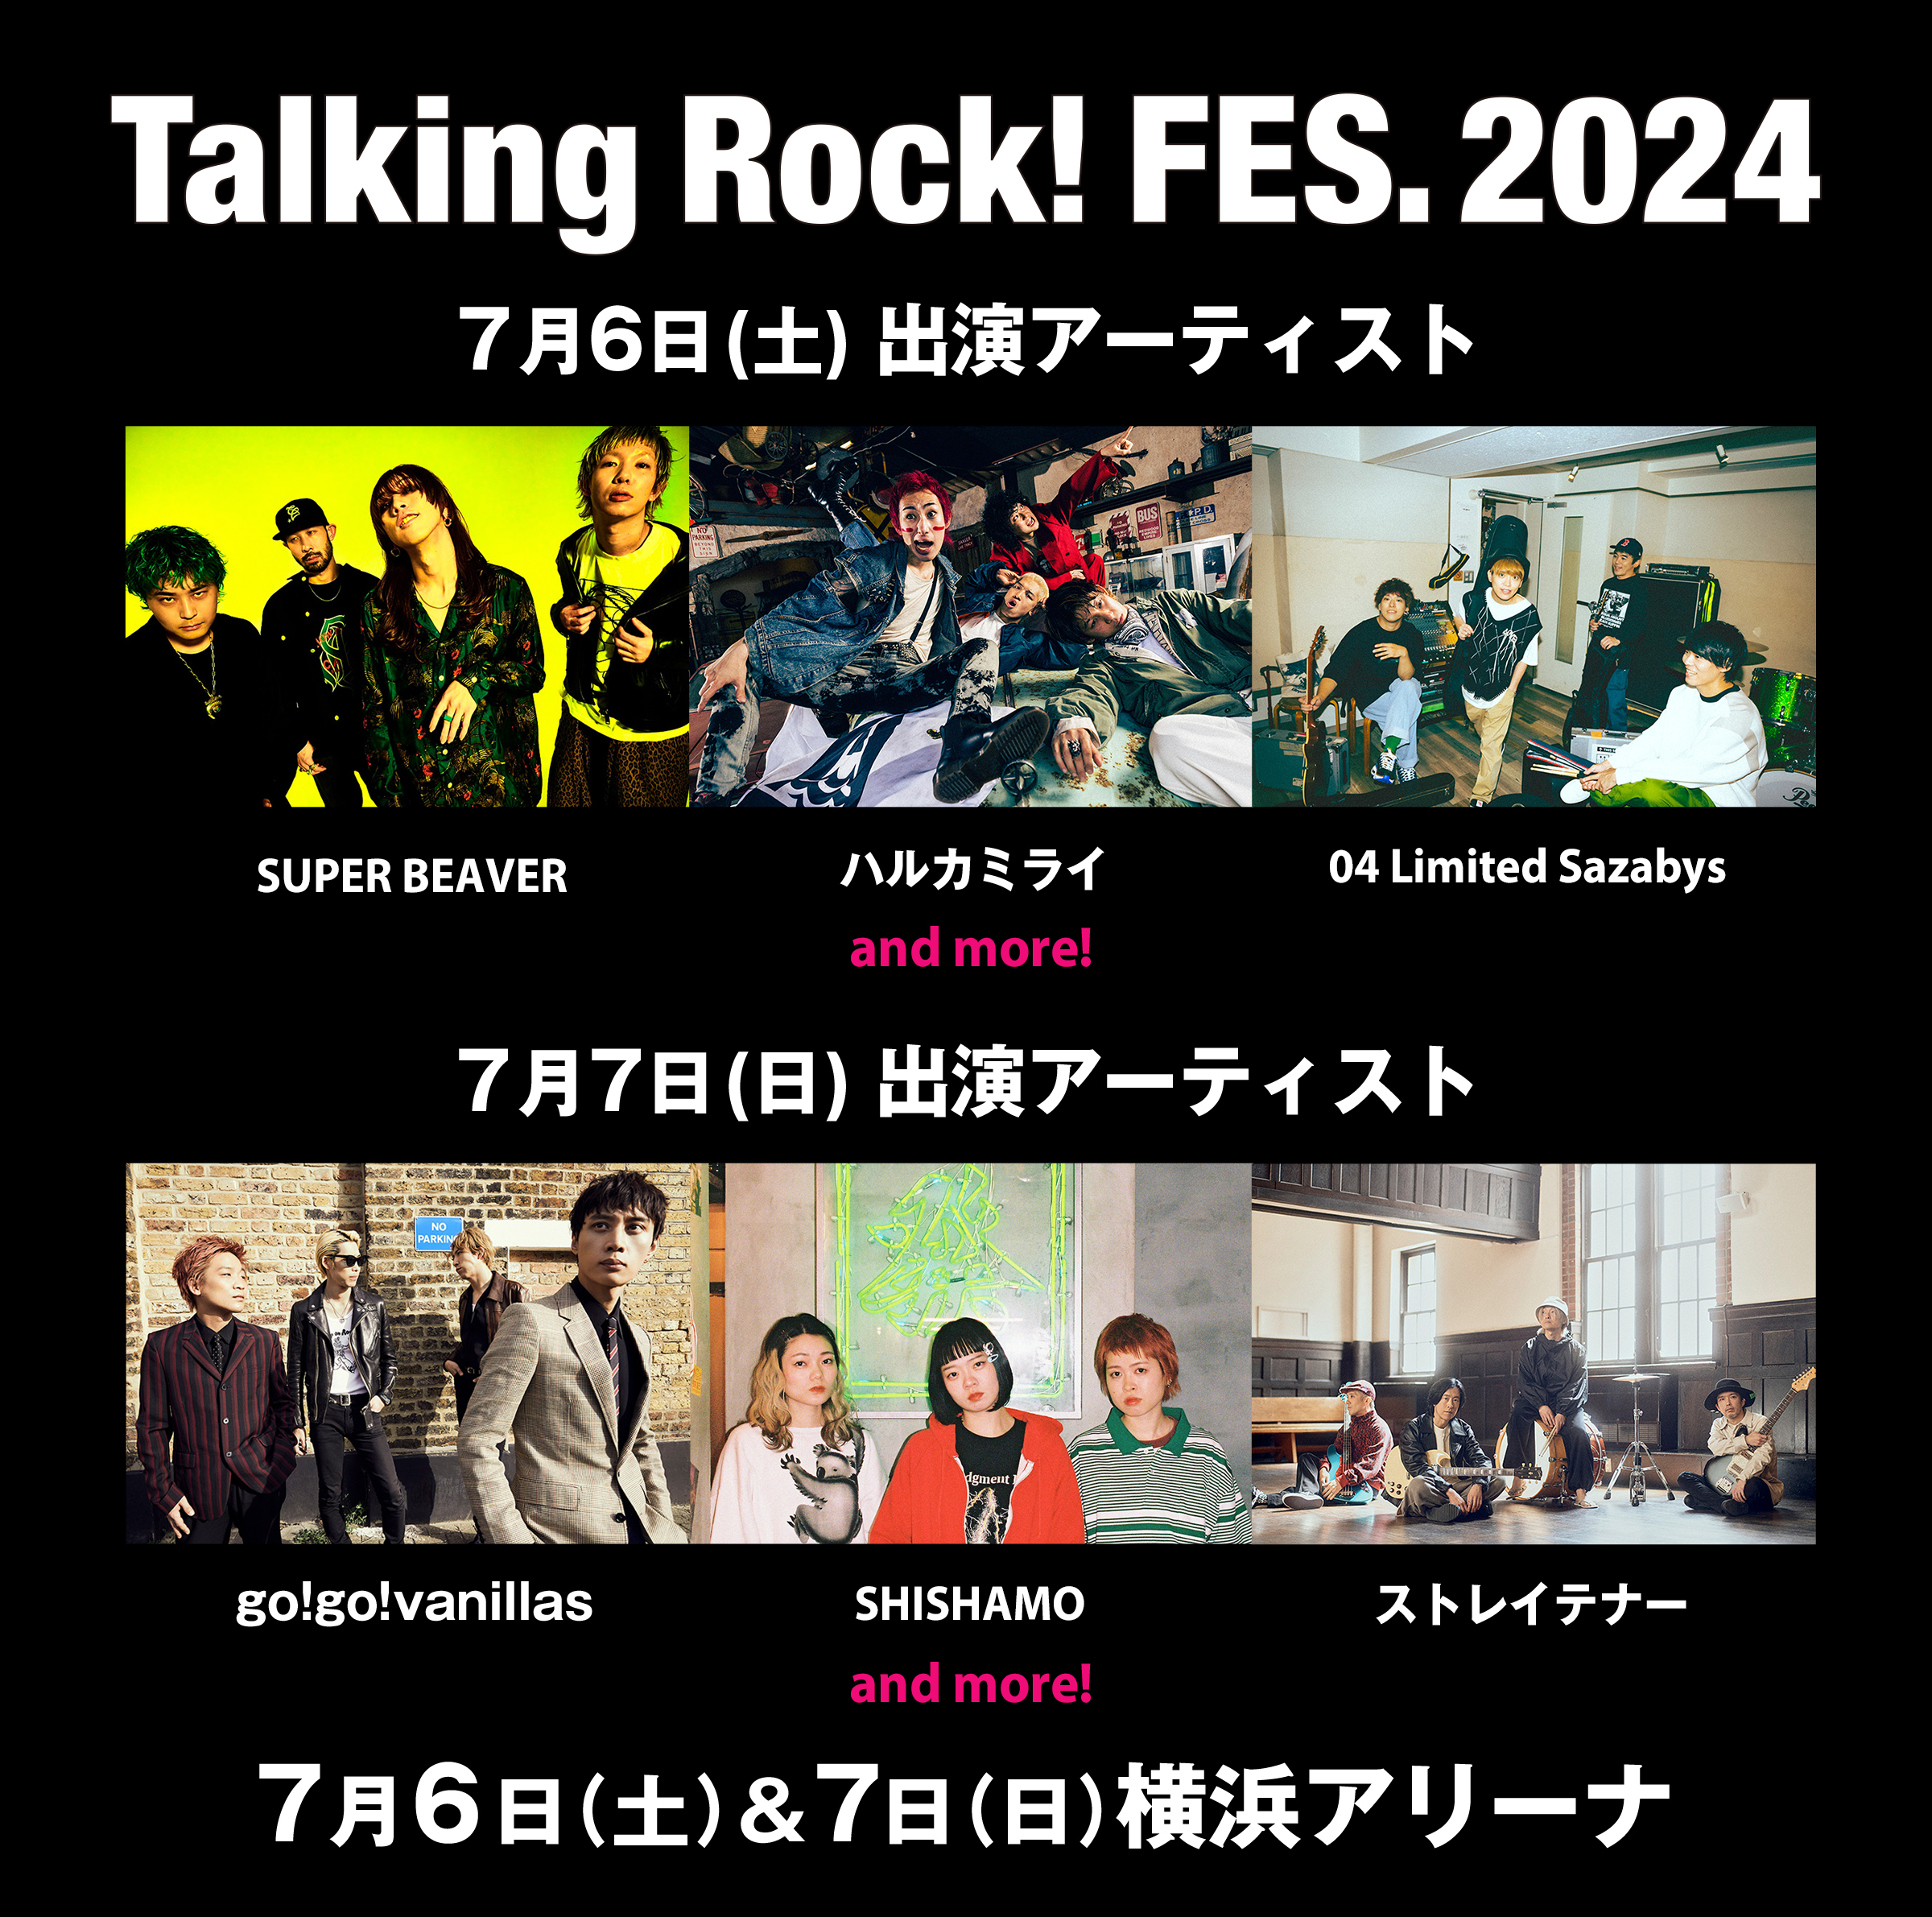 【神奈川】Talking Rock! FES.2024 (横浜アリーナ)